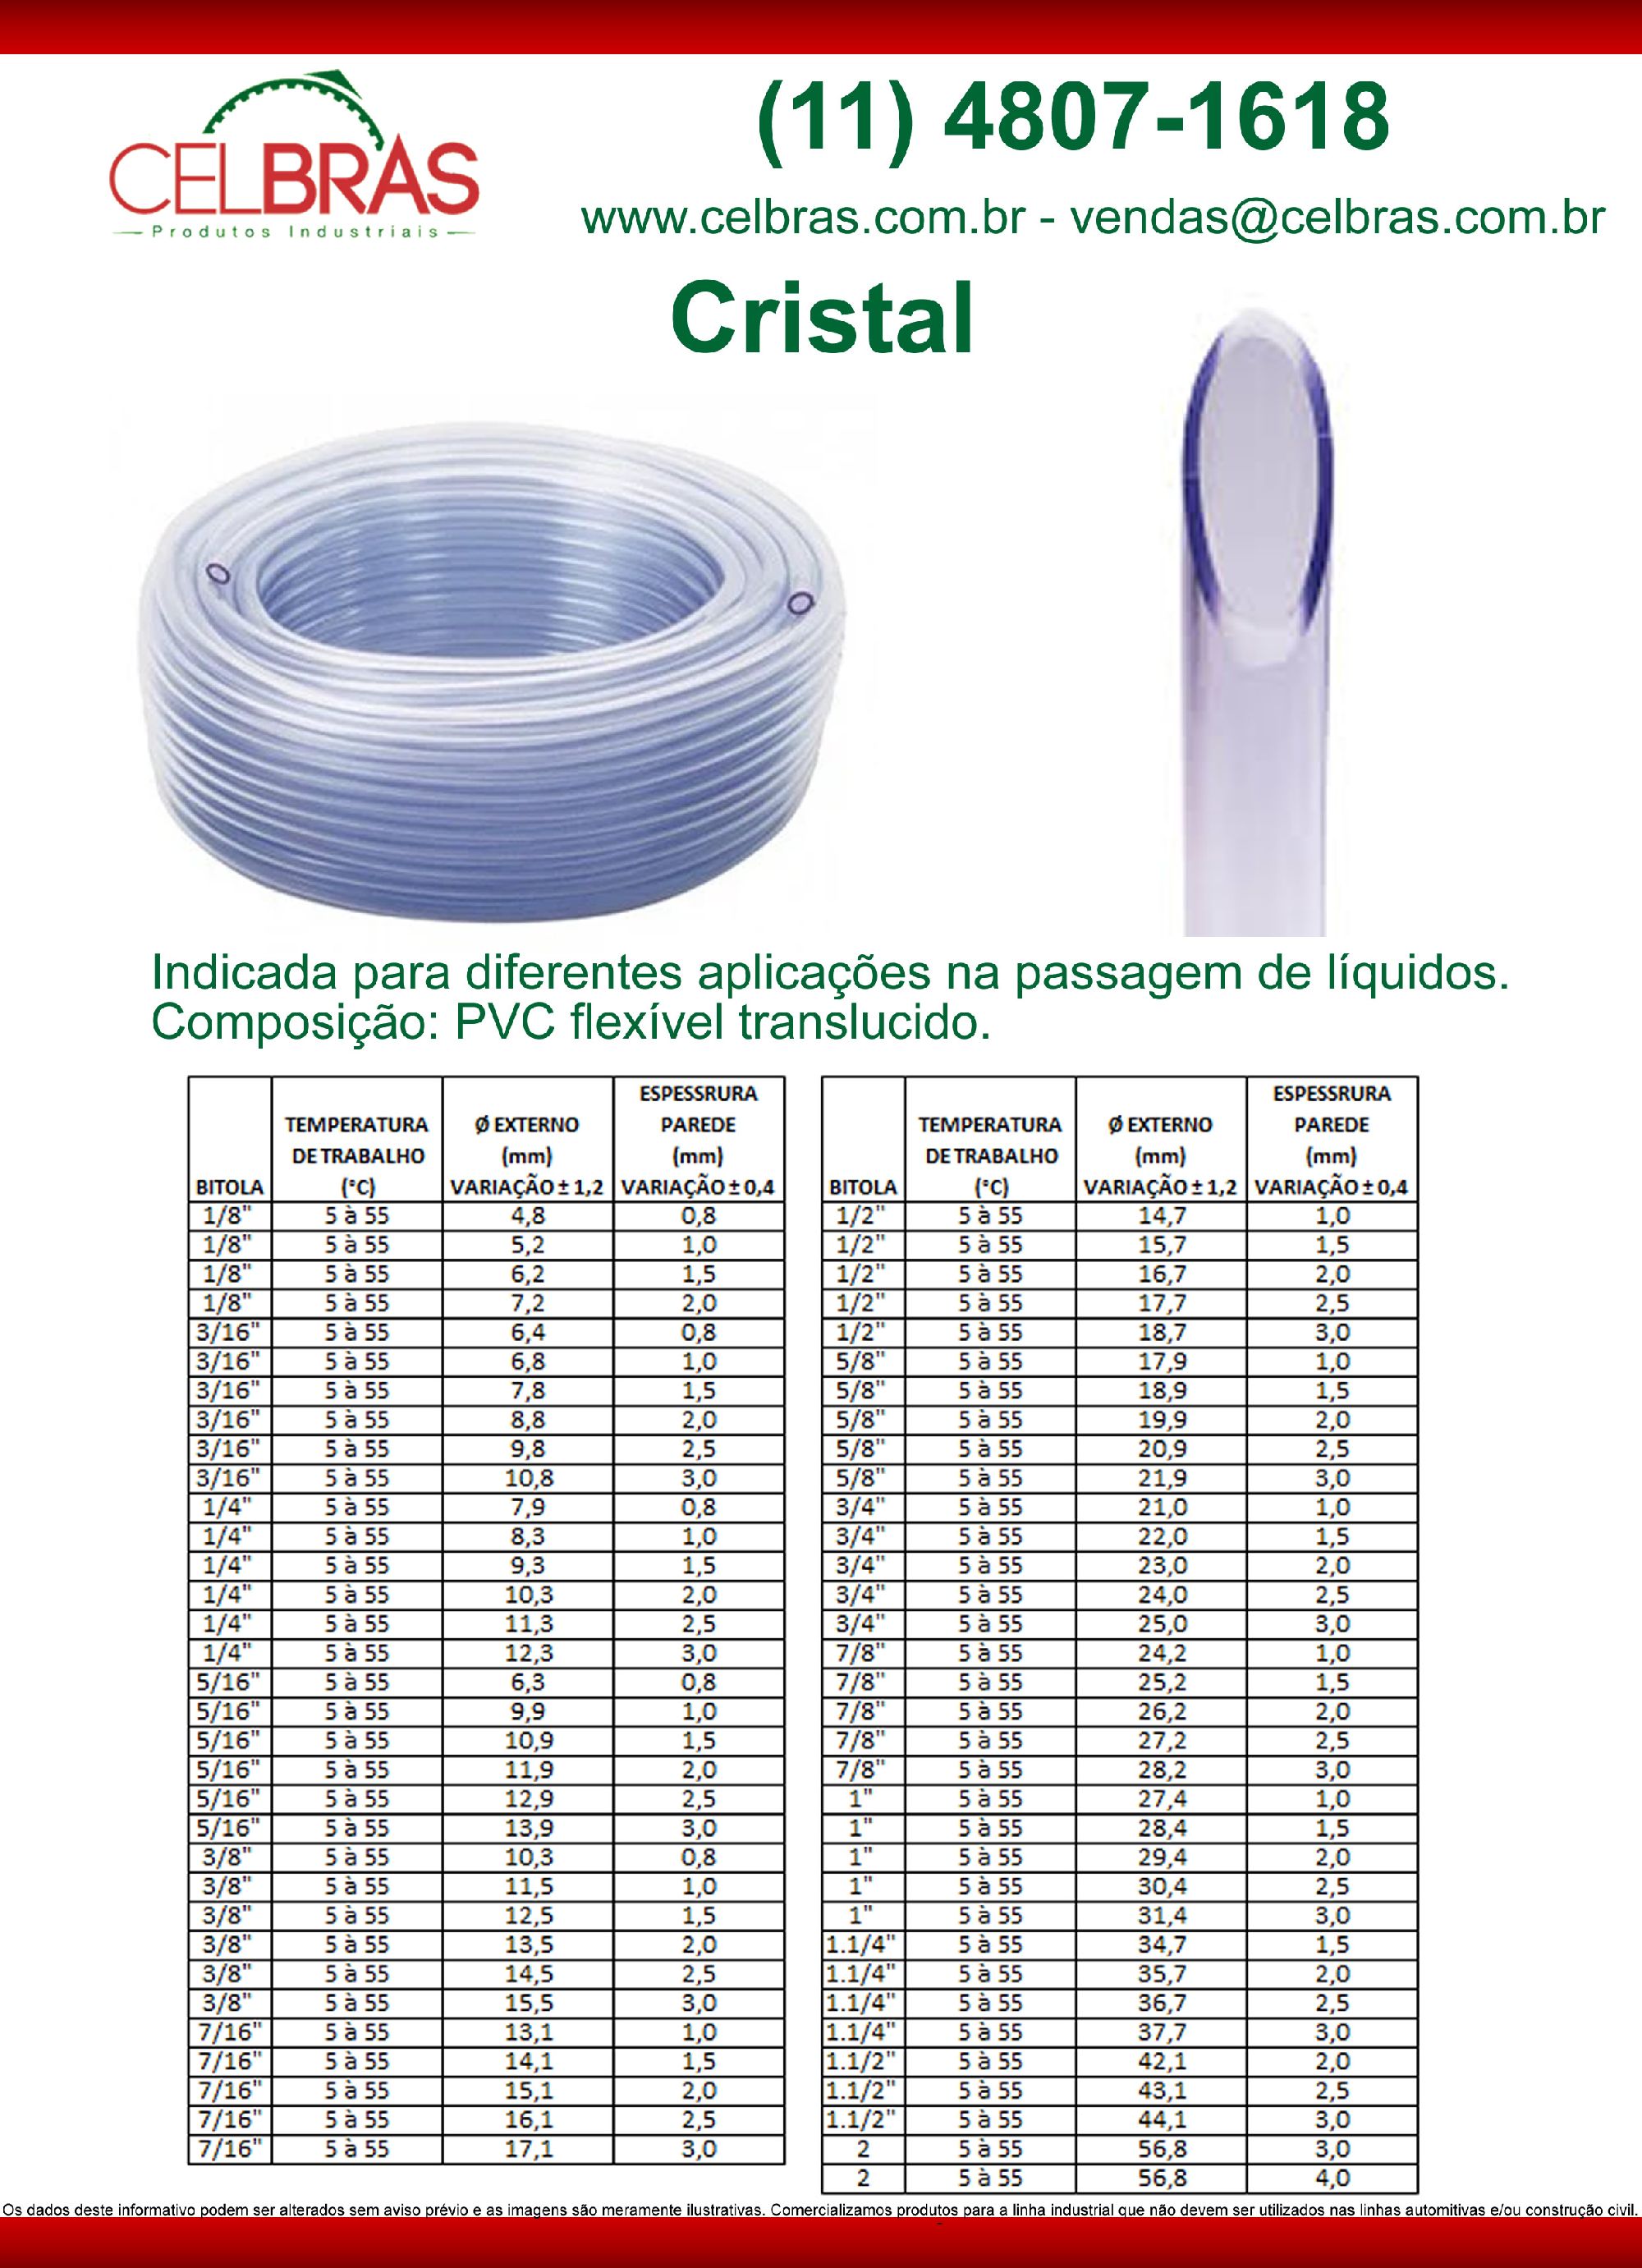 PVC Cristal